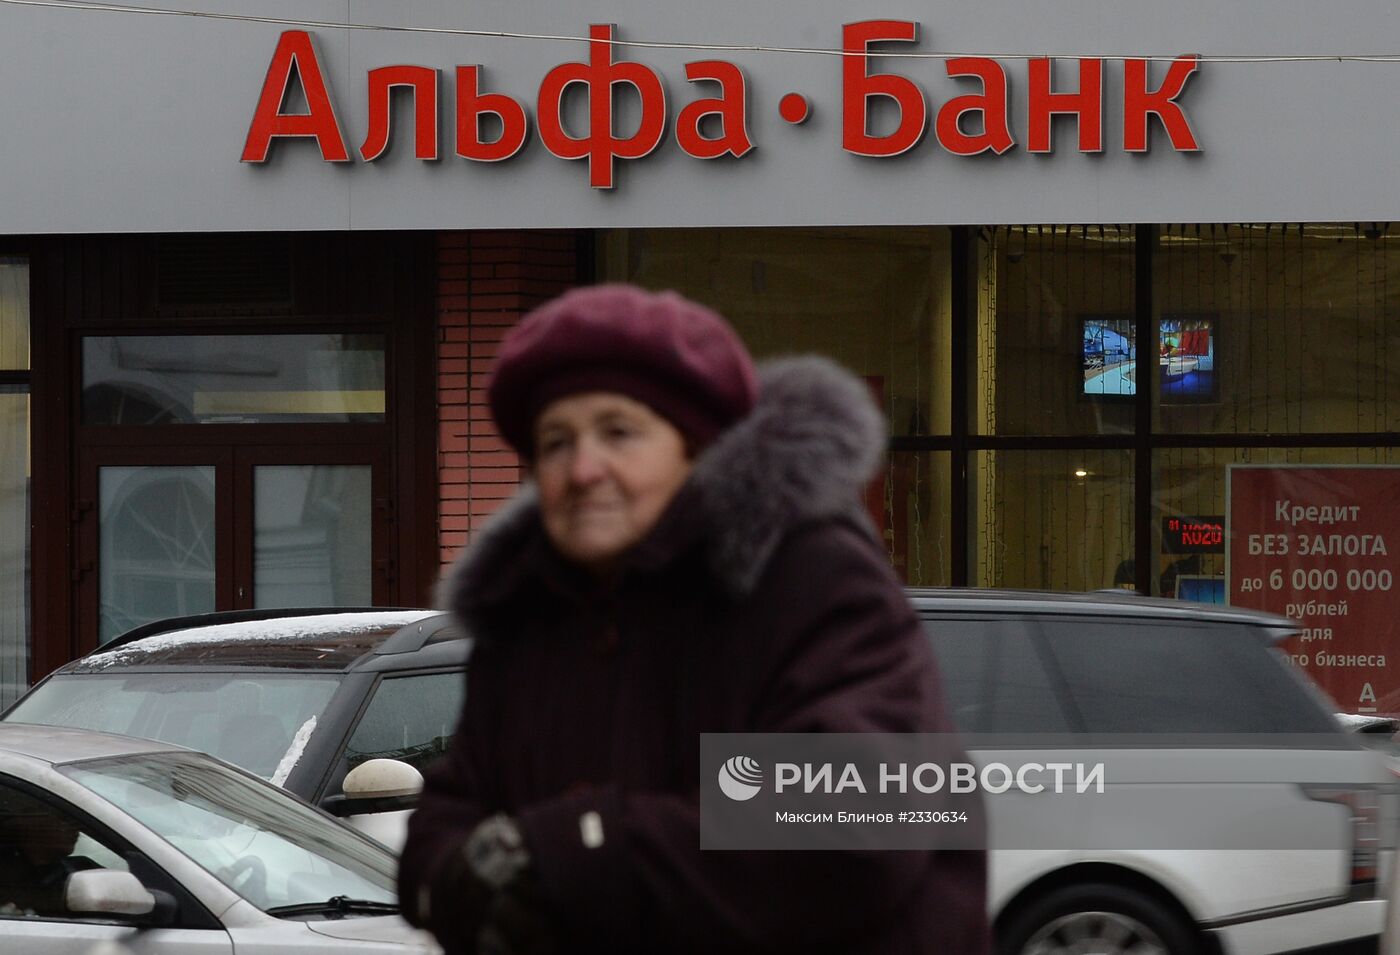 Офис "Альфа-банка" в Москве